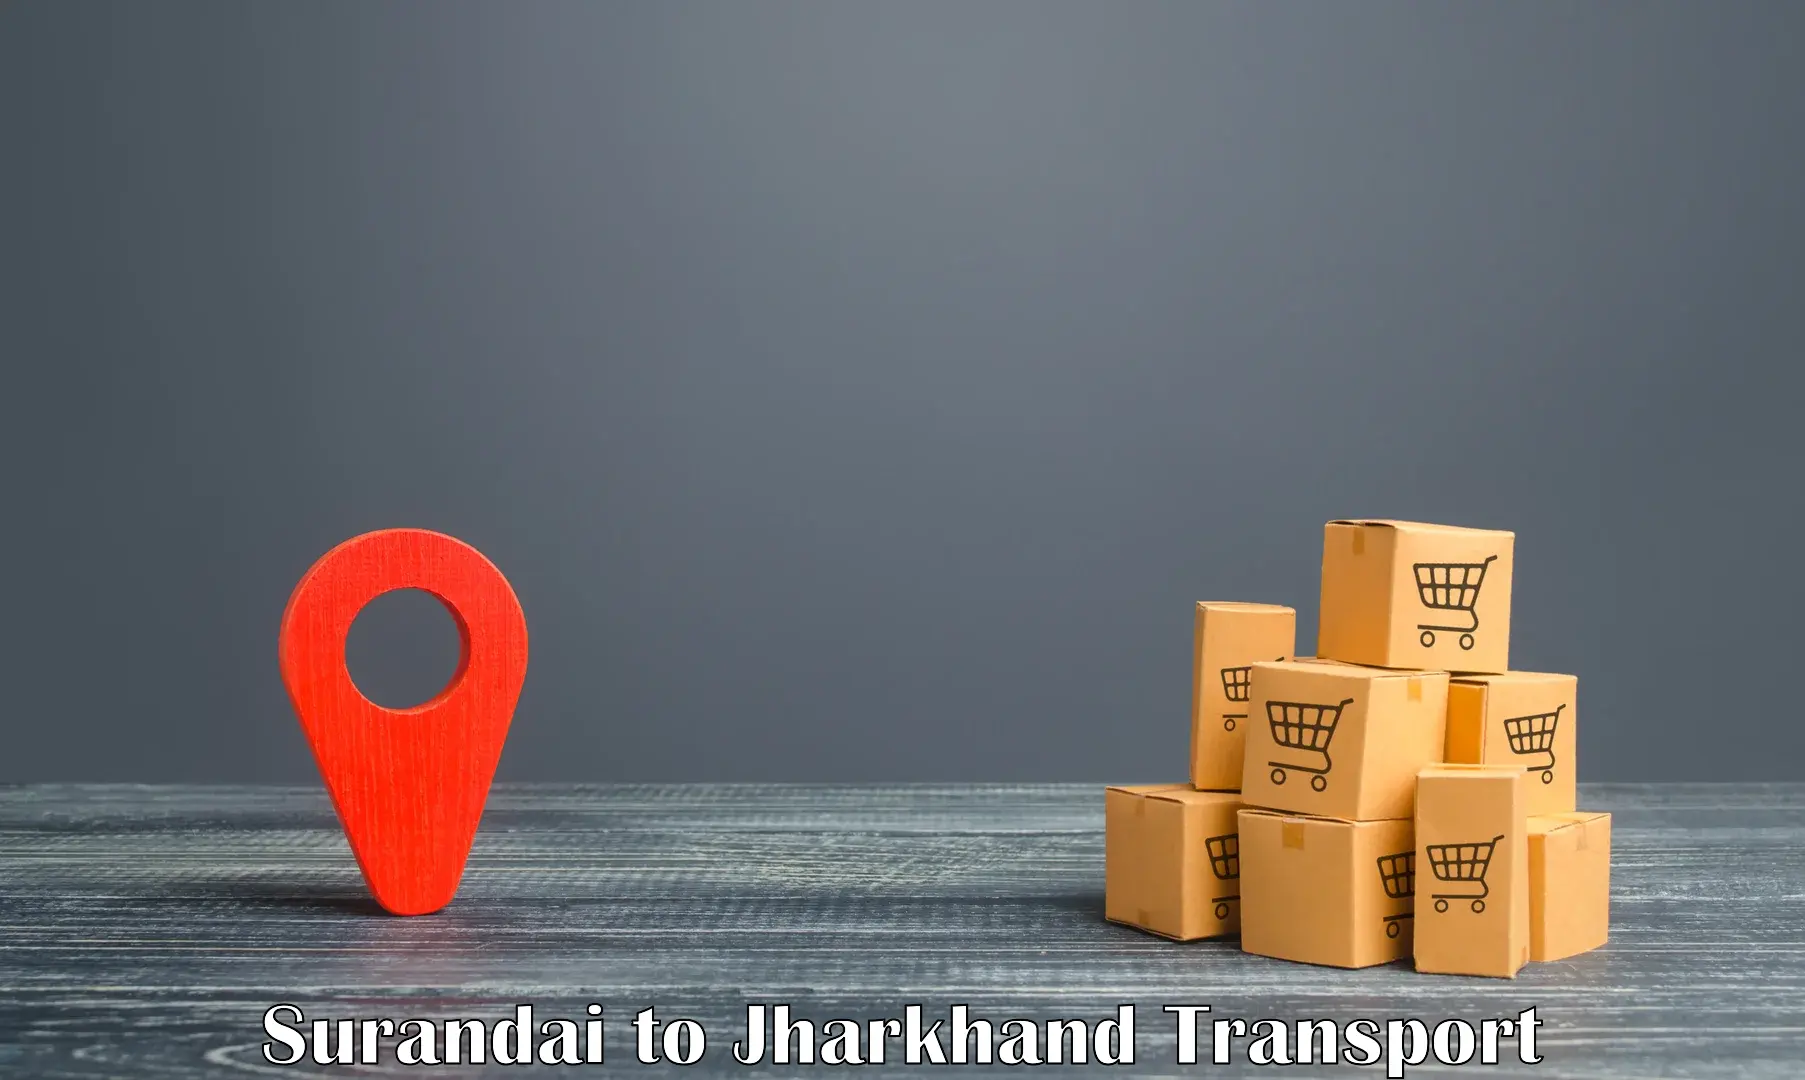 Part load transport service in India Surandai to Govindpur